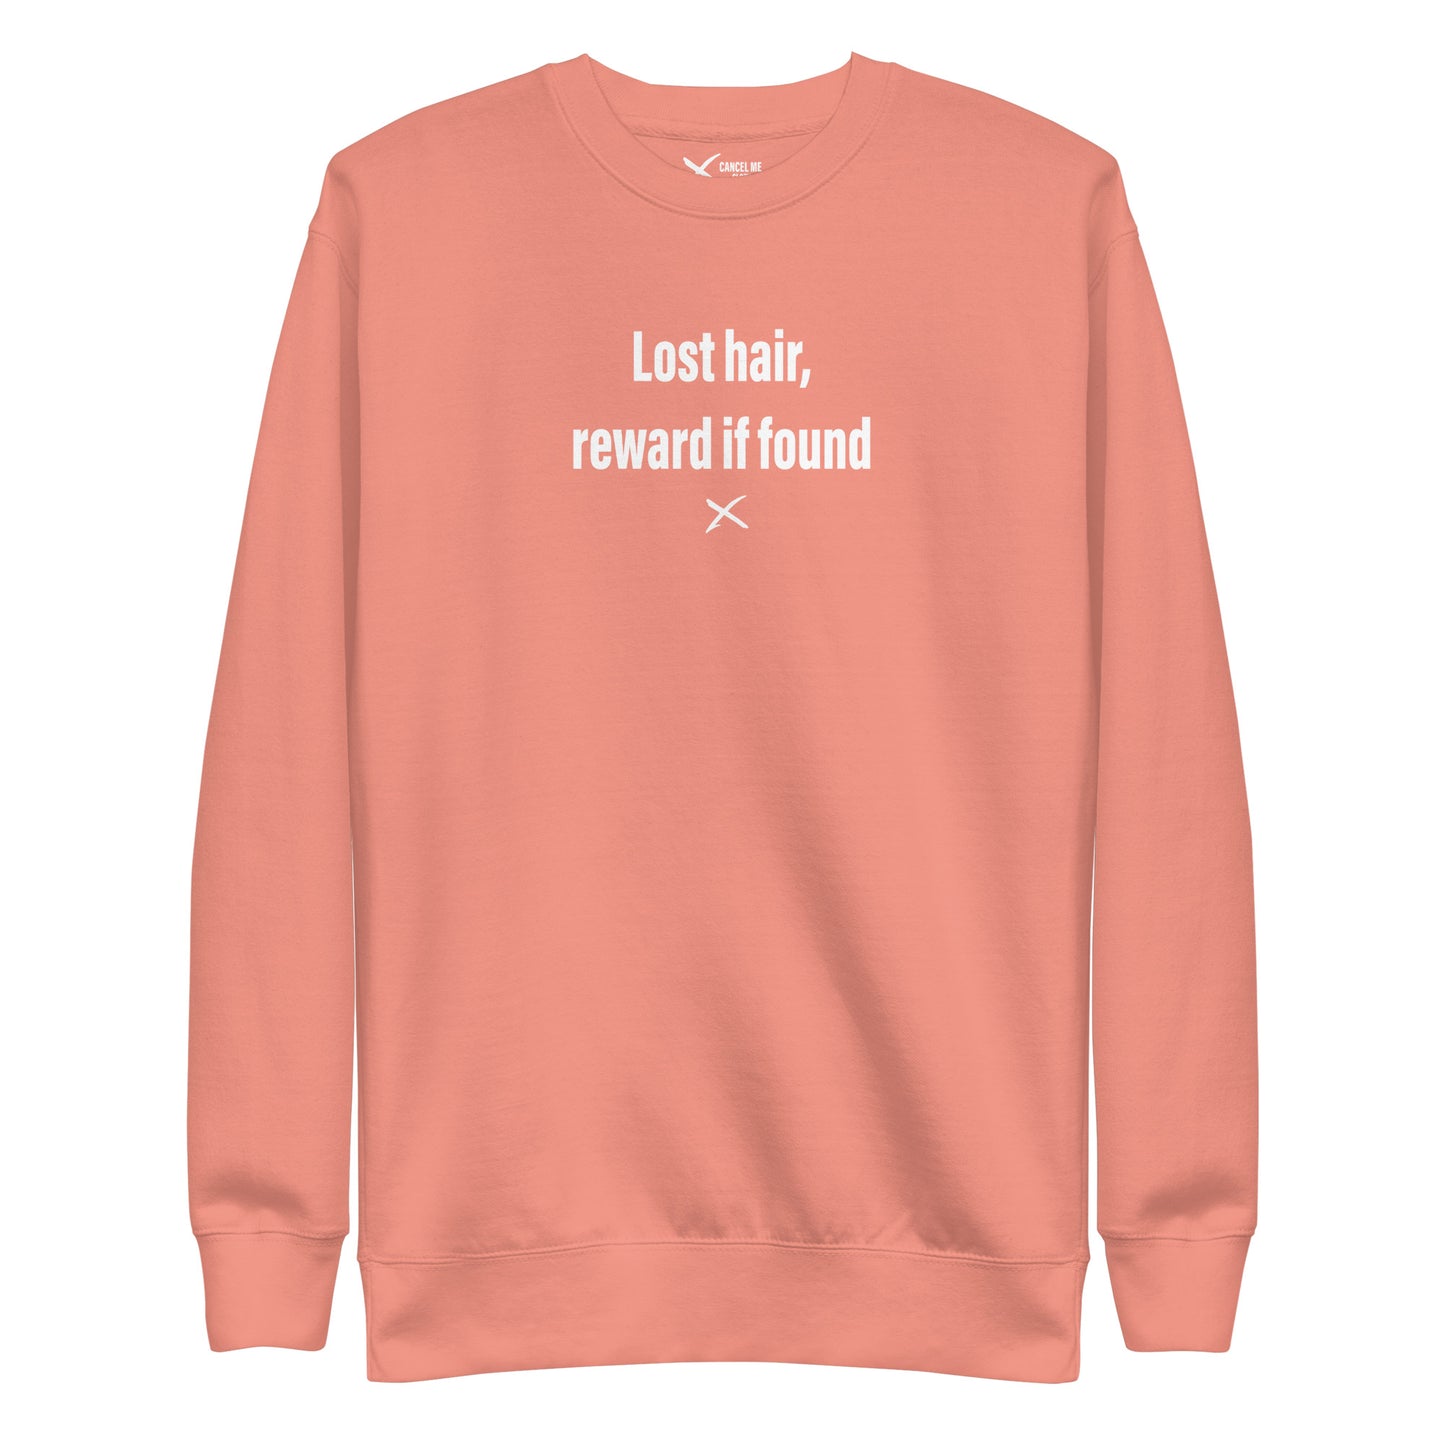 Lost hair, reward if found - Sweatshirt